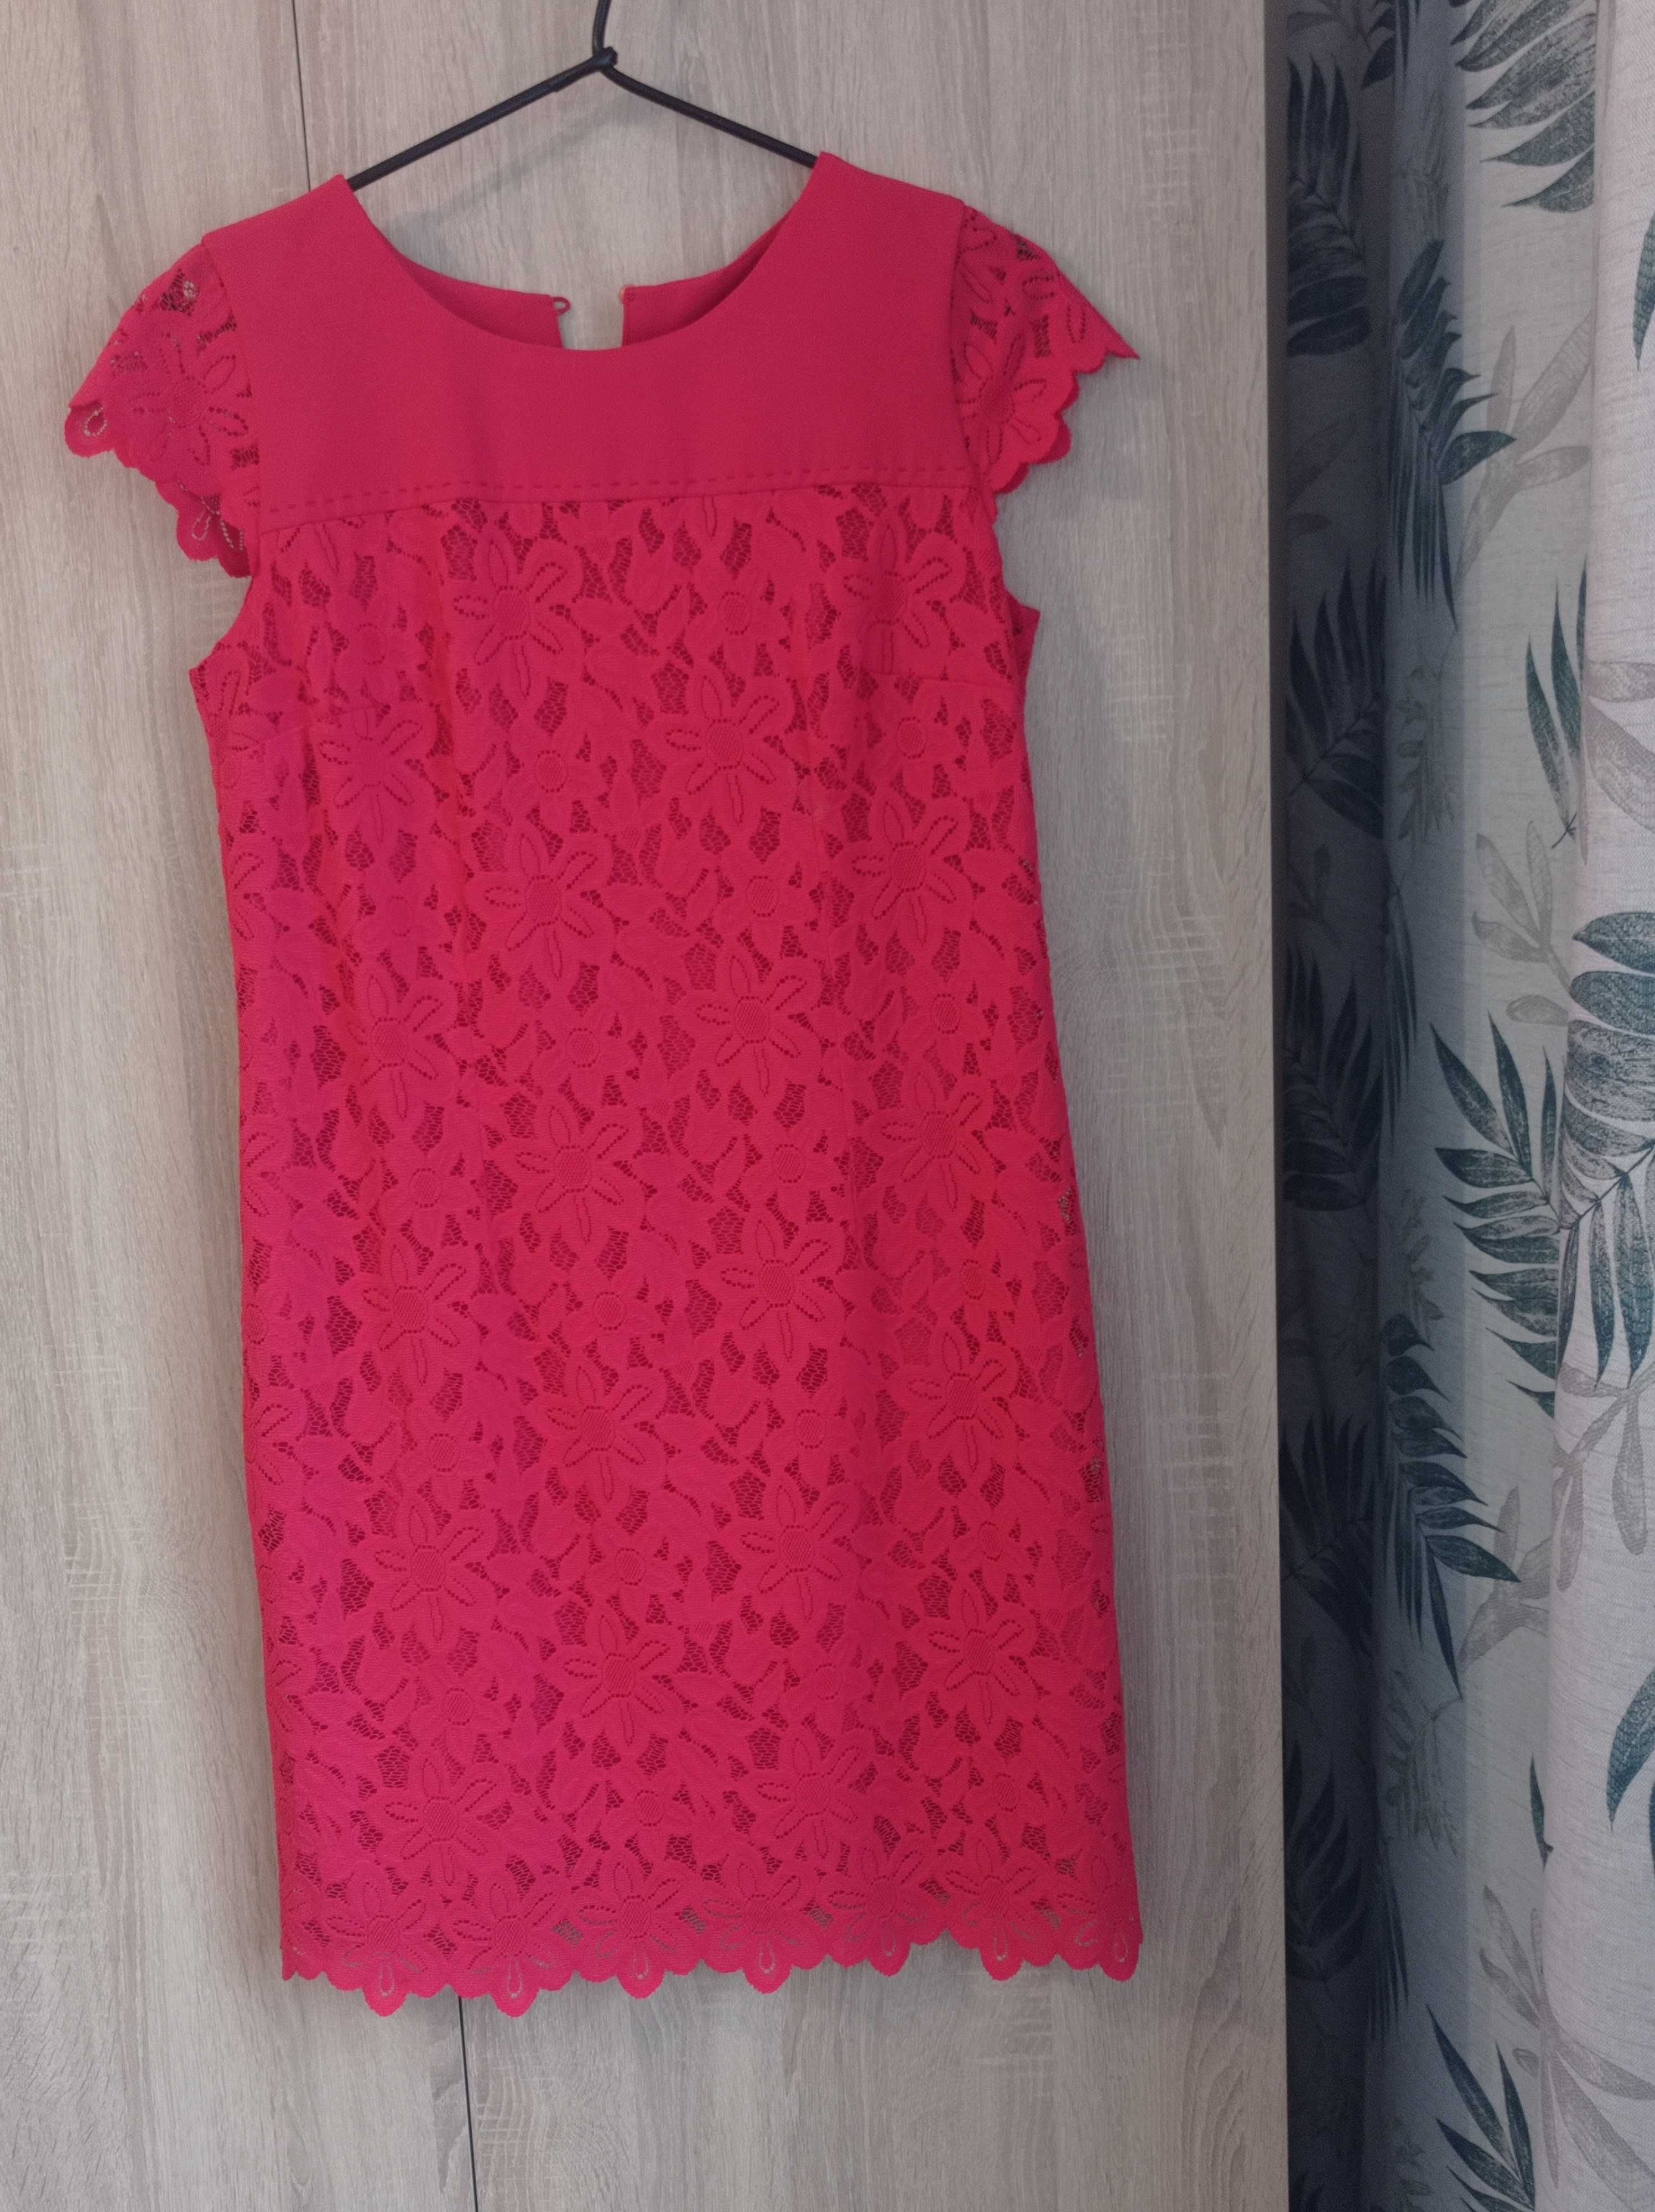 Czerwona sukienka L/XL, sukienka rozmiar XL, sukienka rozmiar L